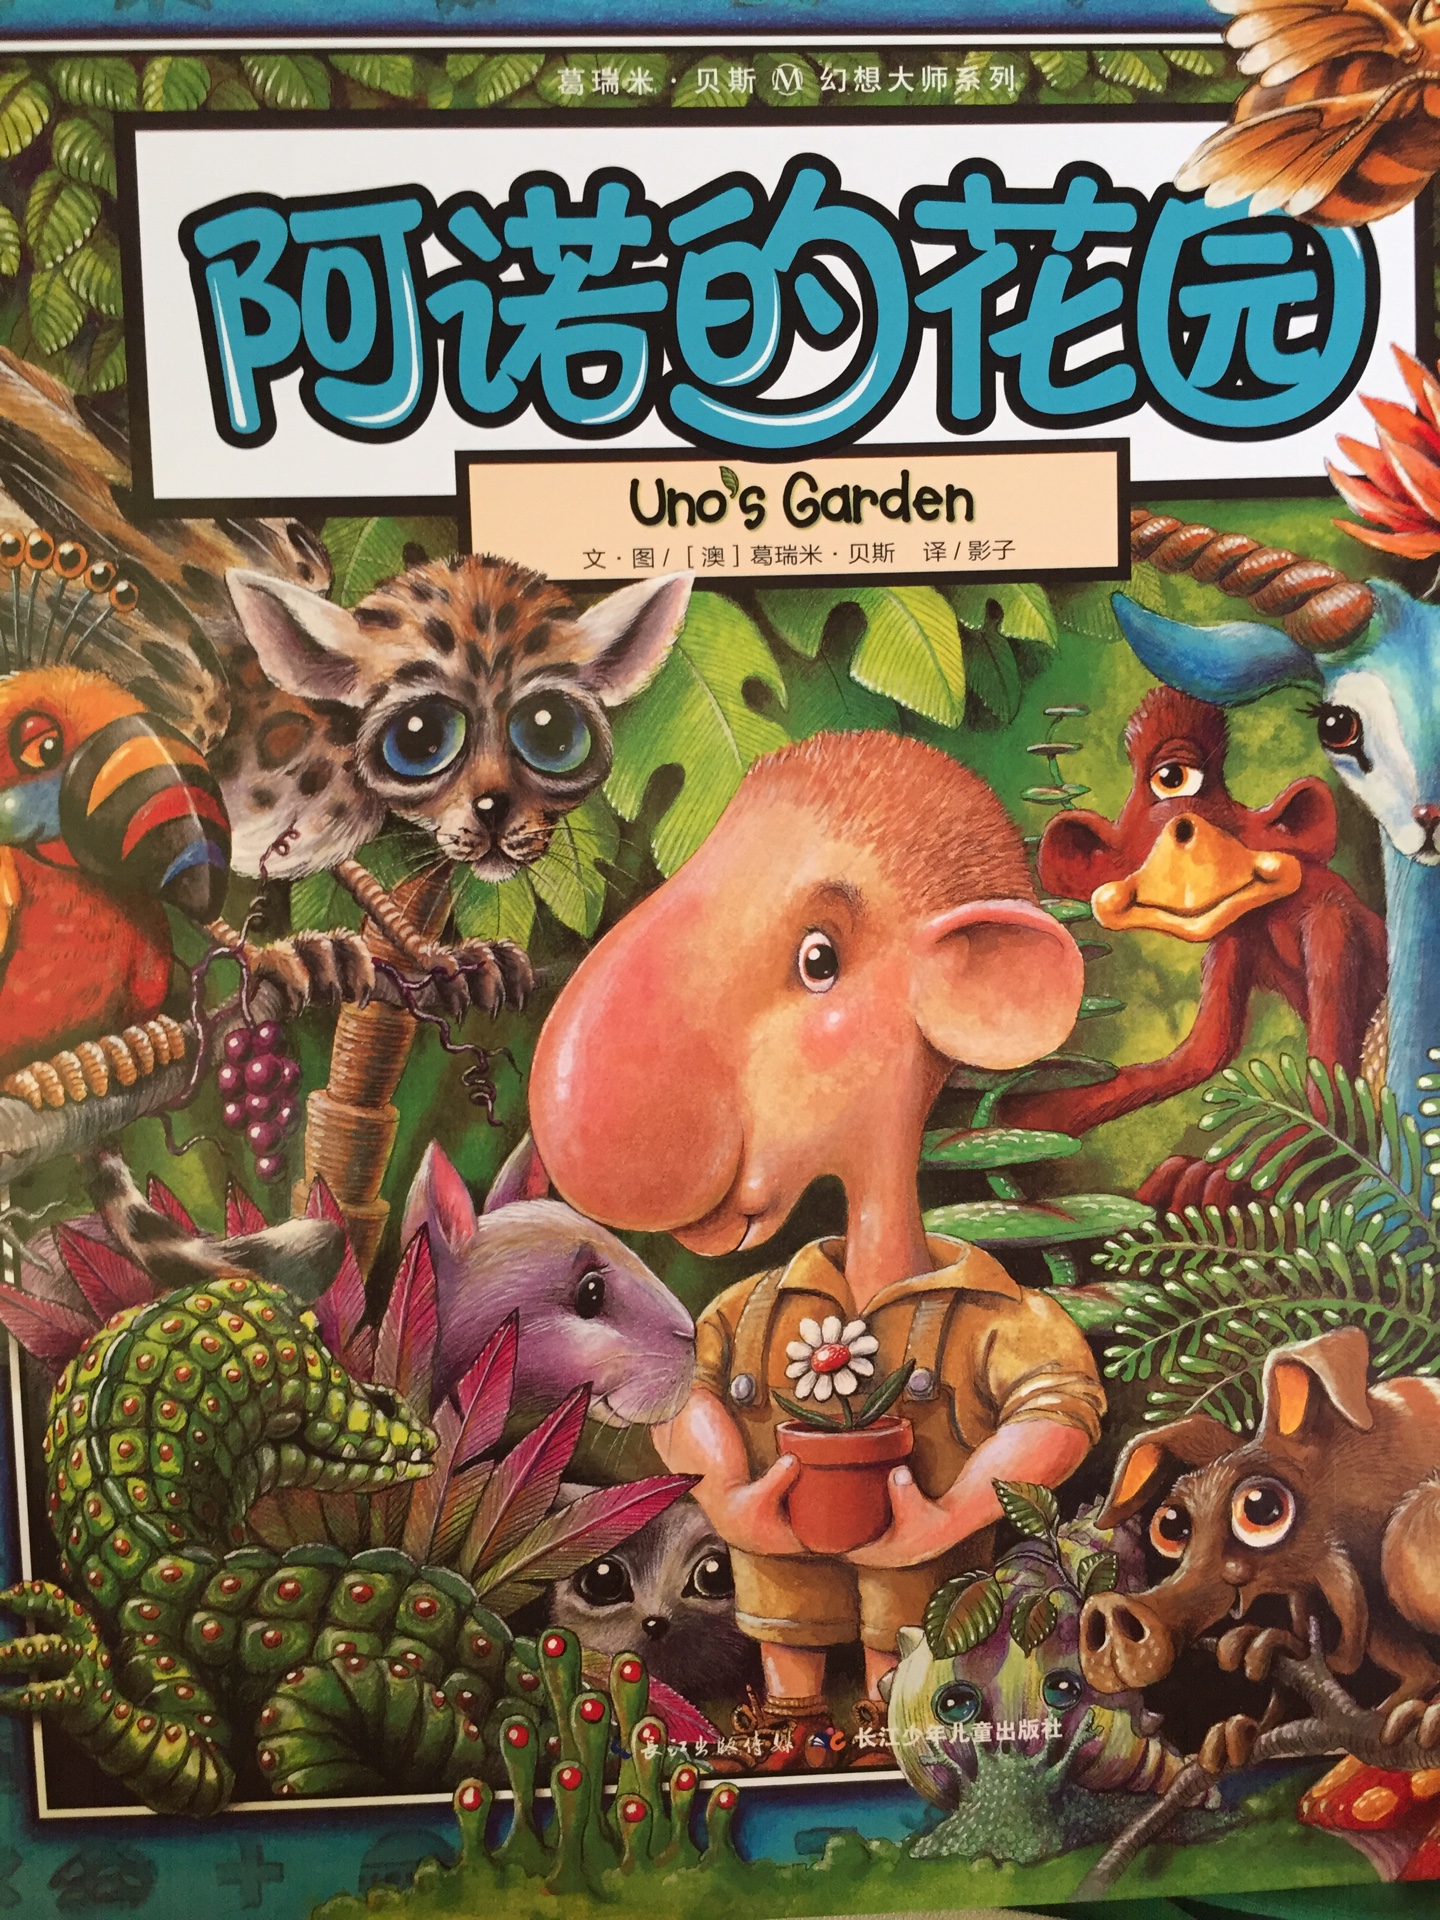 阿诺的花园，是葛瑞米•贝斯“丛林三部曲”的终结篇。这本书巧妙的结合了故事书、游戏书和数学书的元素，让孩子们在看绘本的同时各方面得到结合发展。而且书的画风很美，小朋友特别喜欢看，每次看的时候小朋友都会不自觉的去数一数画的植物数量和动物数量。书里所体现的人与大自然的平衡，我想，随着孩子的慢慢成长，会越来越理解吧。总之，这是一本值得购买的书。